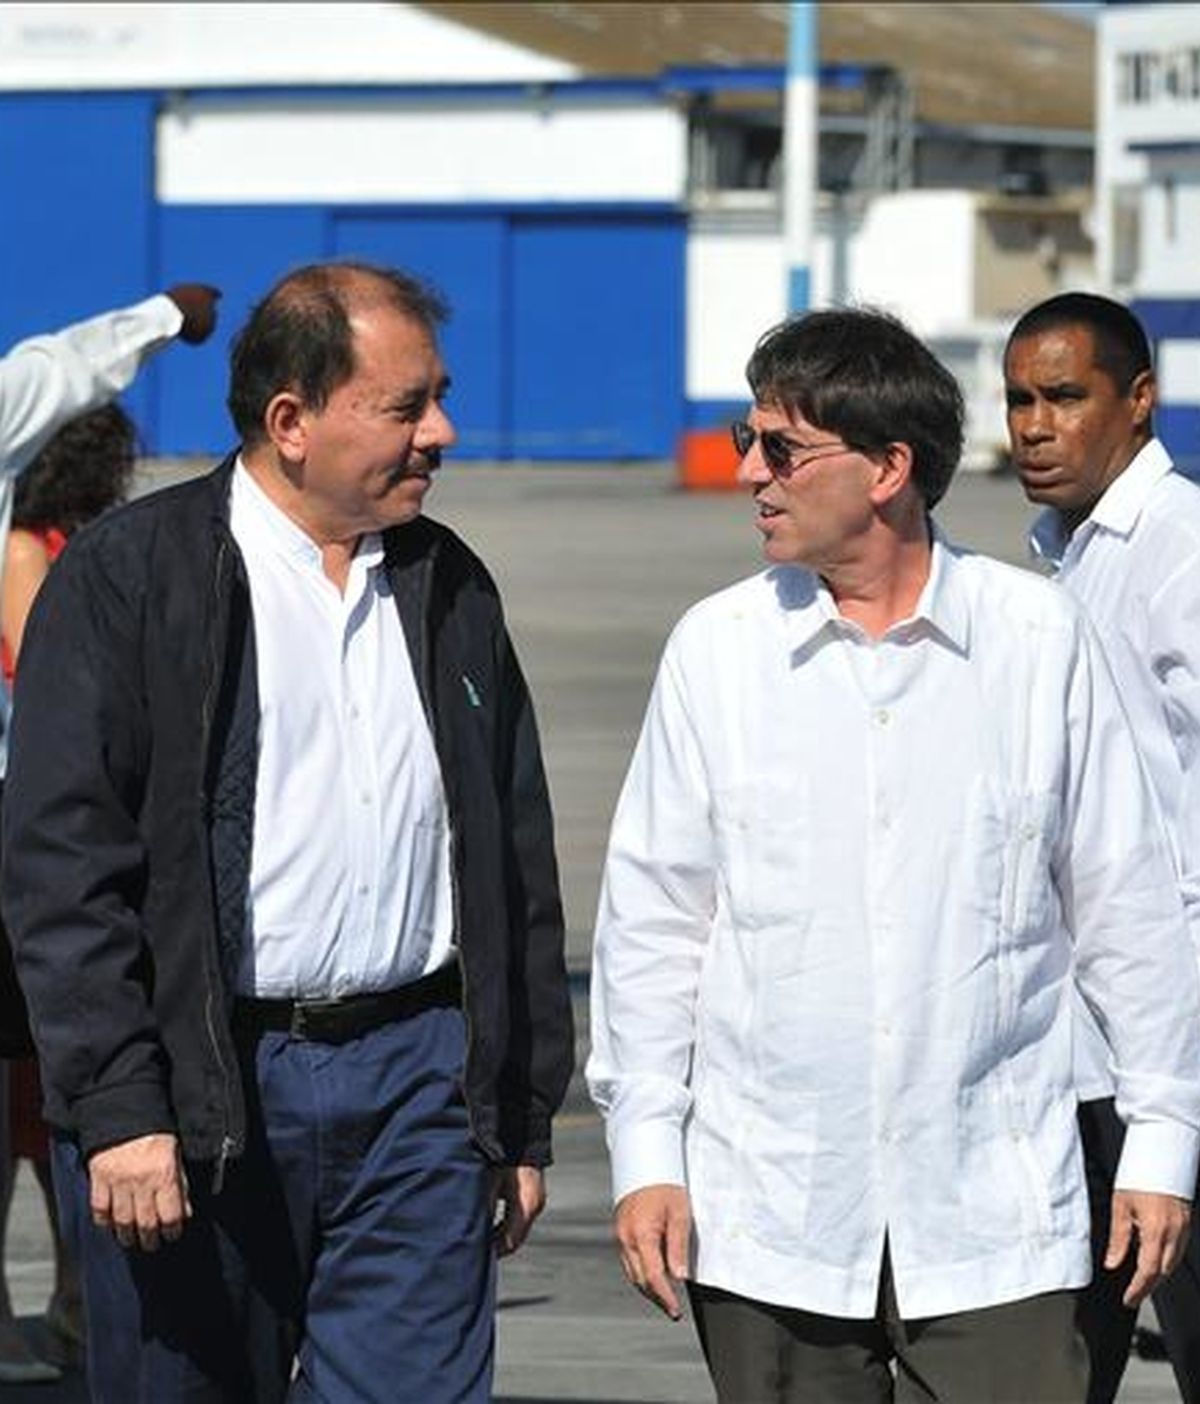 El presidente de Nicaragua, Daniel Ortega (i), fue recibido por el canciller cubano, Bruno Rodríguez, en La Habana (Cuba). Ortega realiza una visita oficial a la isla en la que se reunirá con su homólogo Raúl Castro. EFE